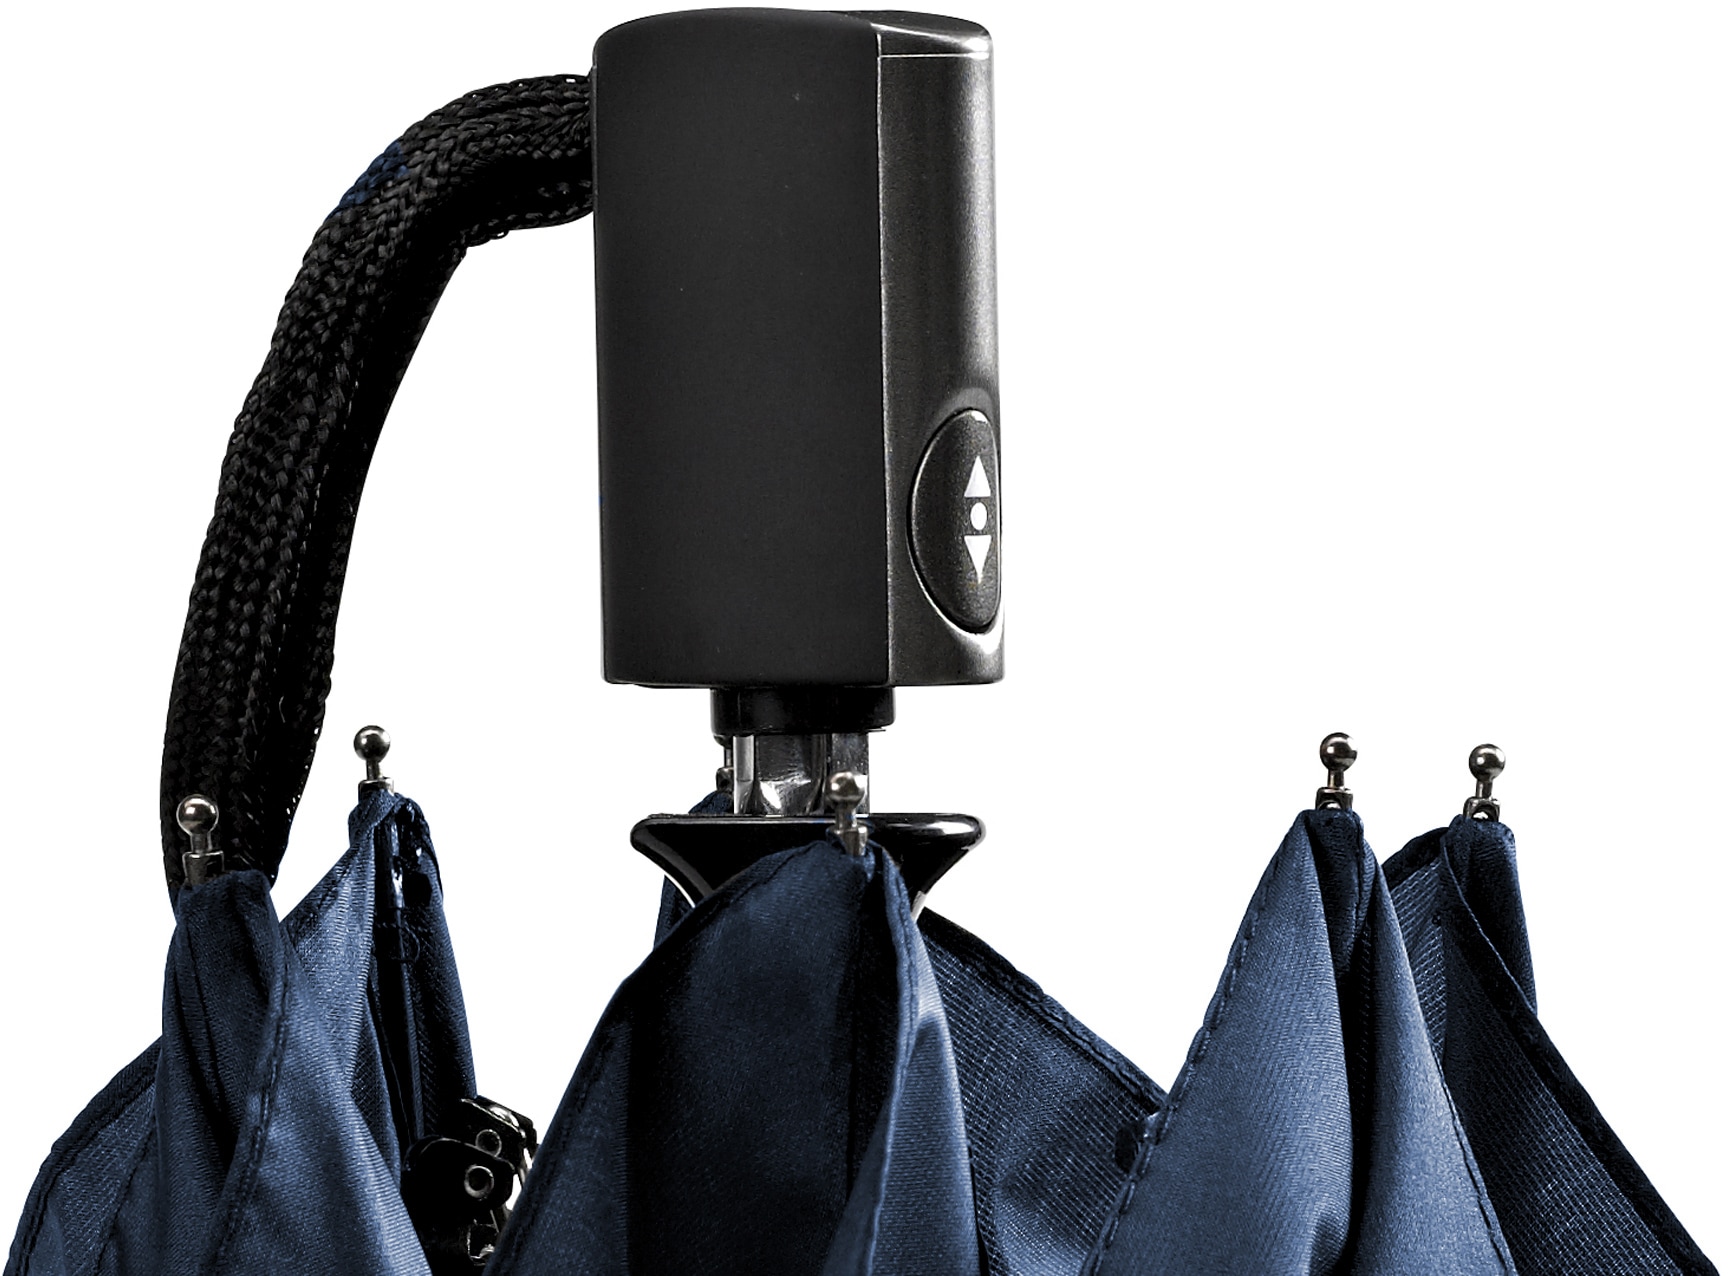 EuroSCHIRM® Taschenregenschirm »Automatik 3224, marineblau«, extra flach  und leicht bequem kaufen